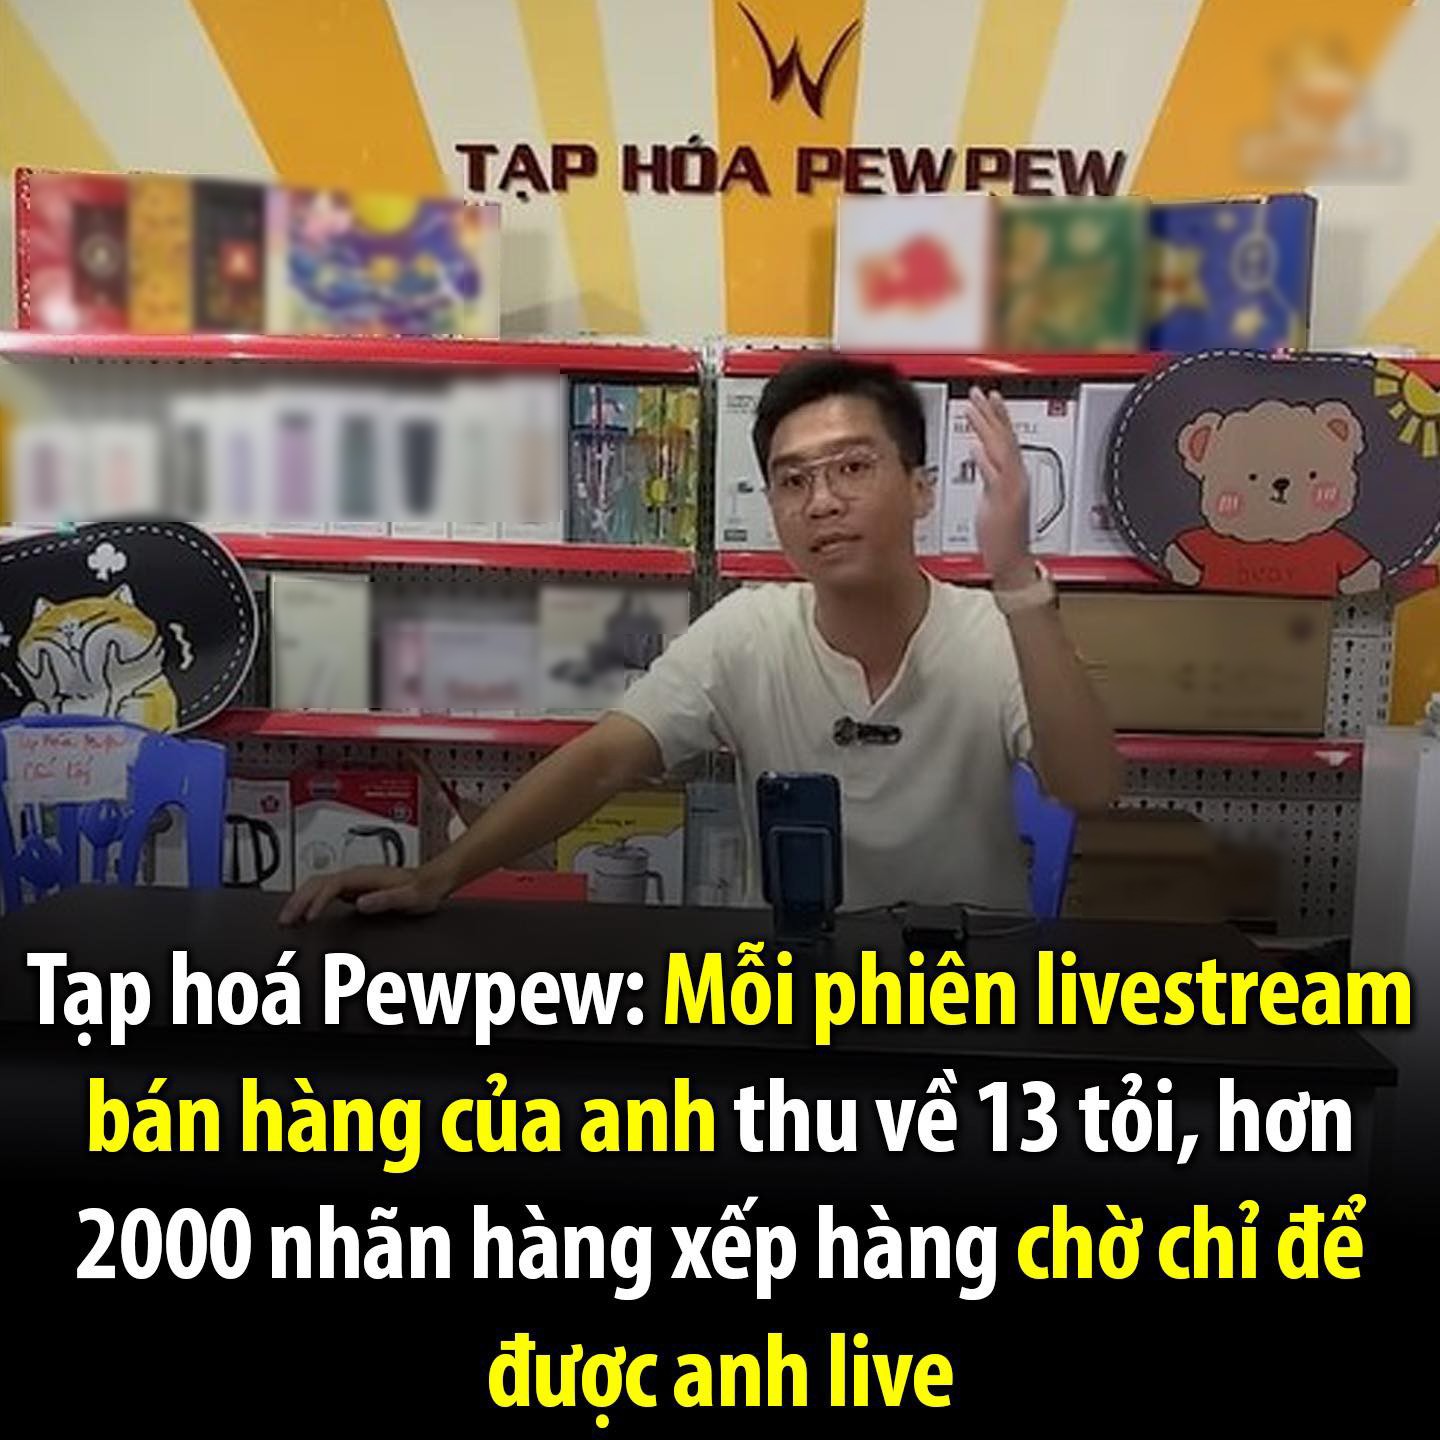 PewPew nói gì về doanh thu 13 tỷ trong một lần livestream "gây sốc"? - 1